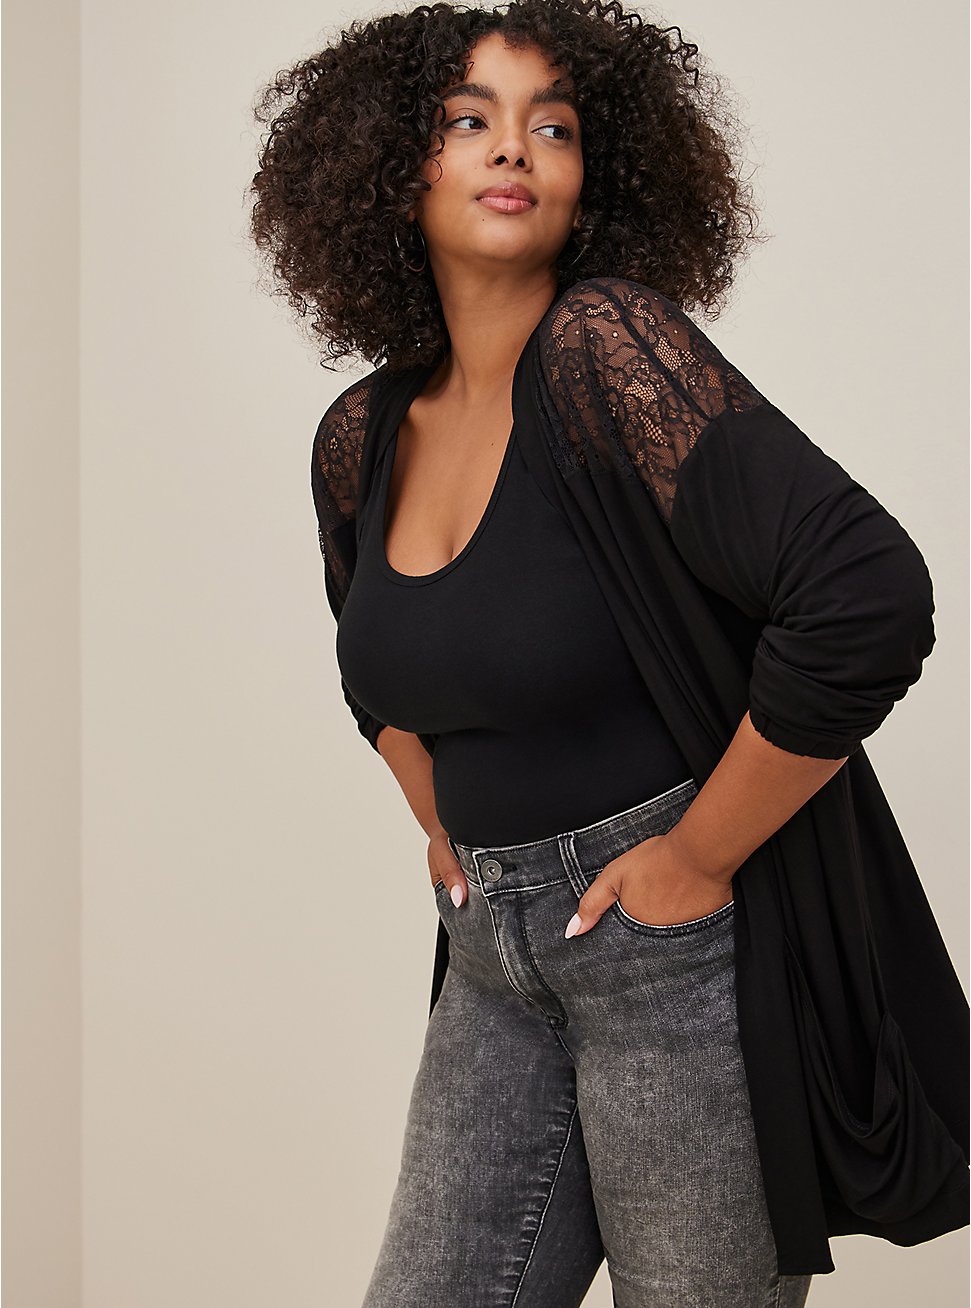 Plus Size Lace Yoke Cardigan - Super Soft Black, BLACK, hi-res